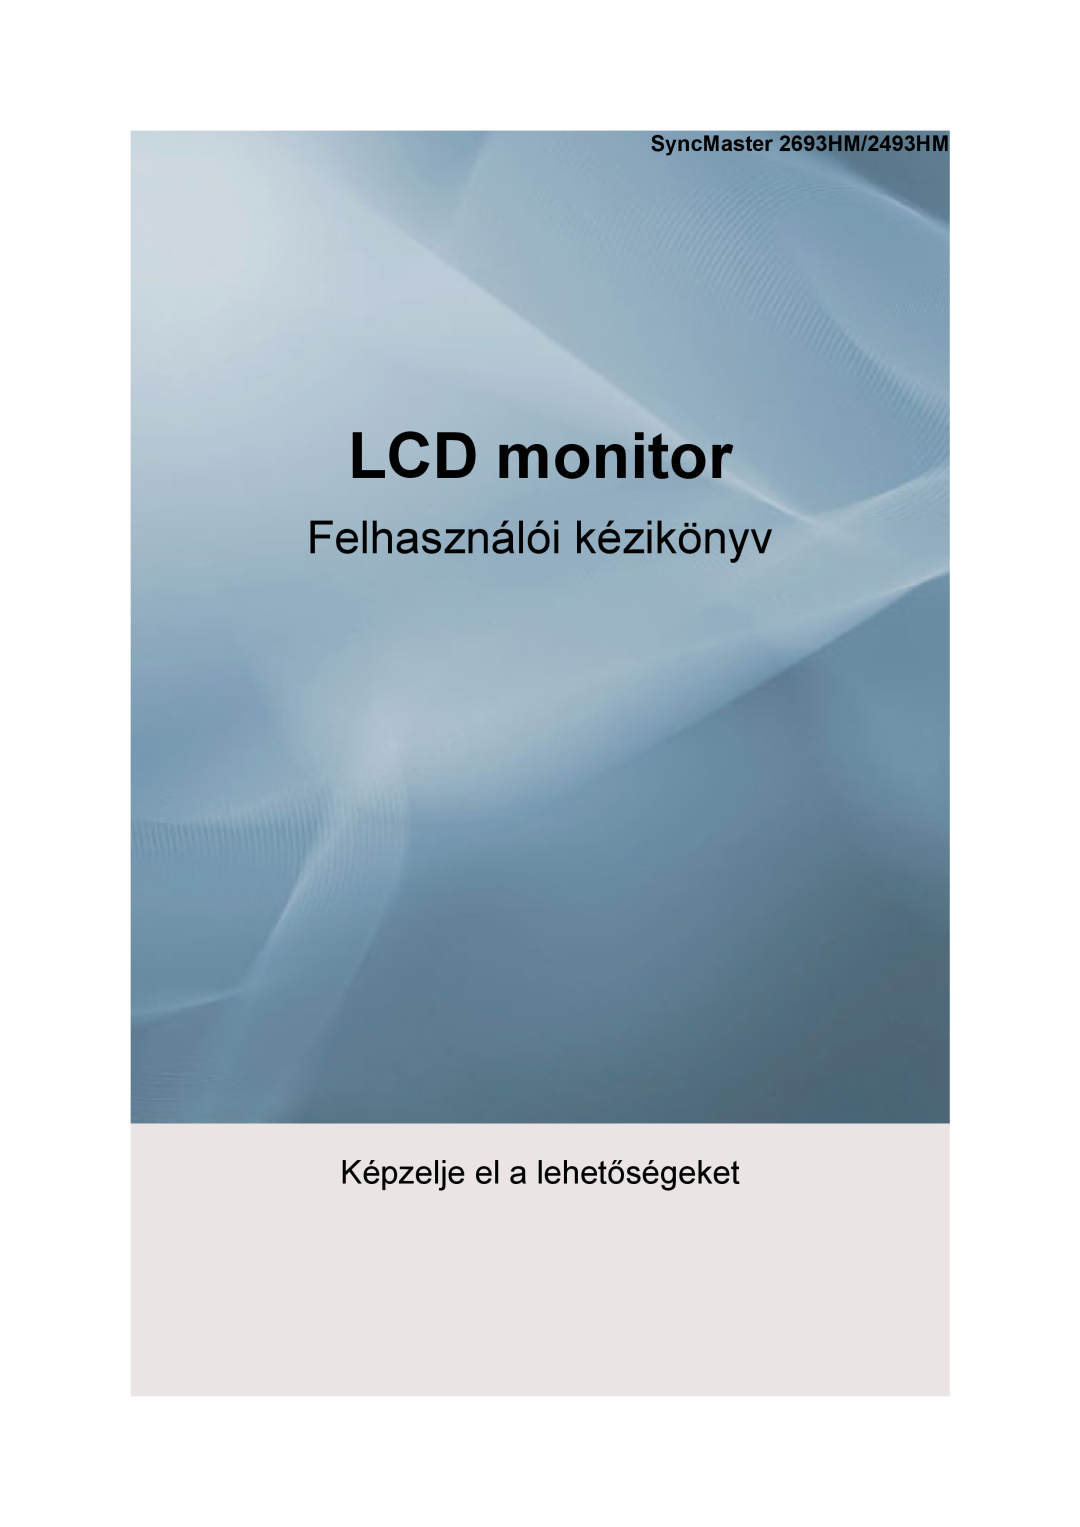 Samsung LS24KIERBQ/EDC, LS24KIEEFV/EDC, LS26KIERBQ/EDC, LS26KIEEFV/EDC manual Lcd Monitor, quick start guide, 2493HM, 2693HM 